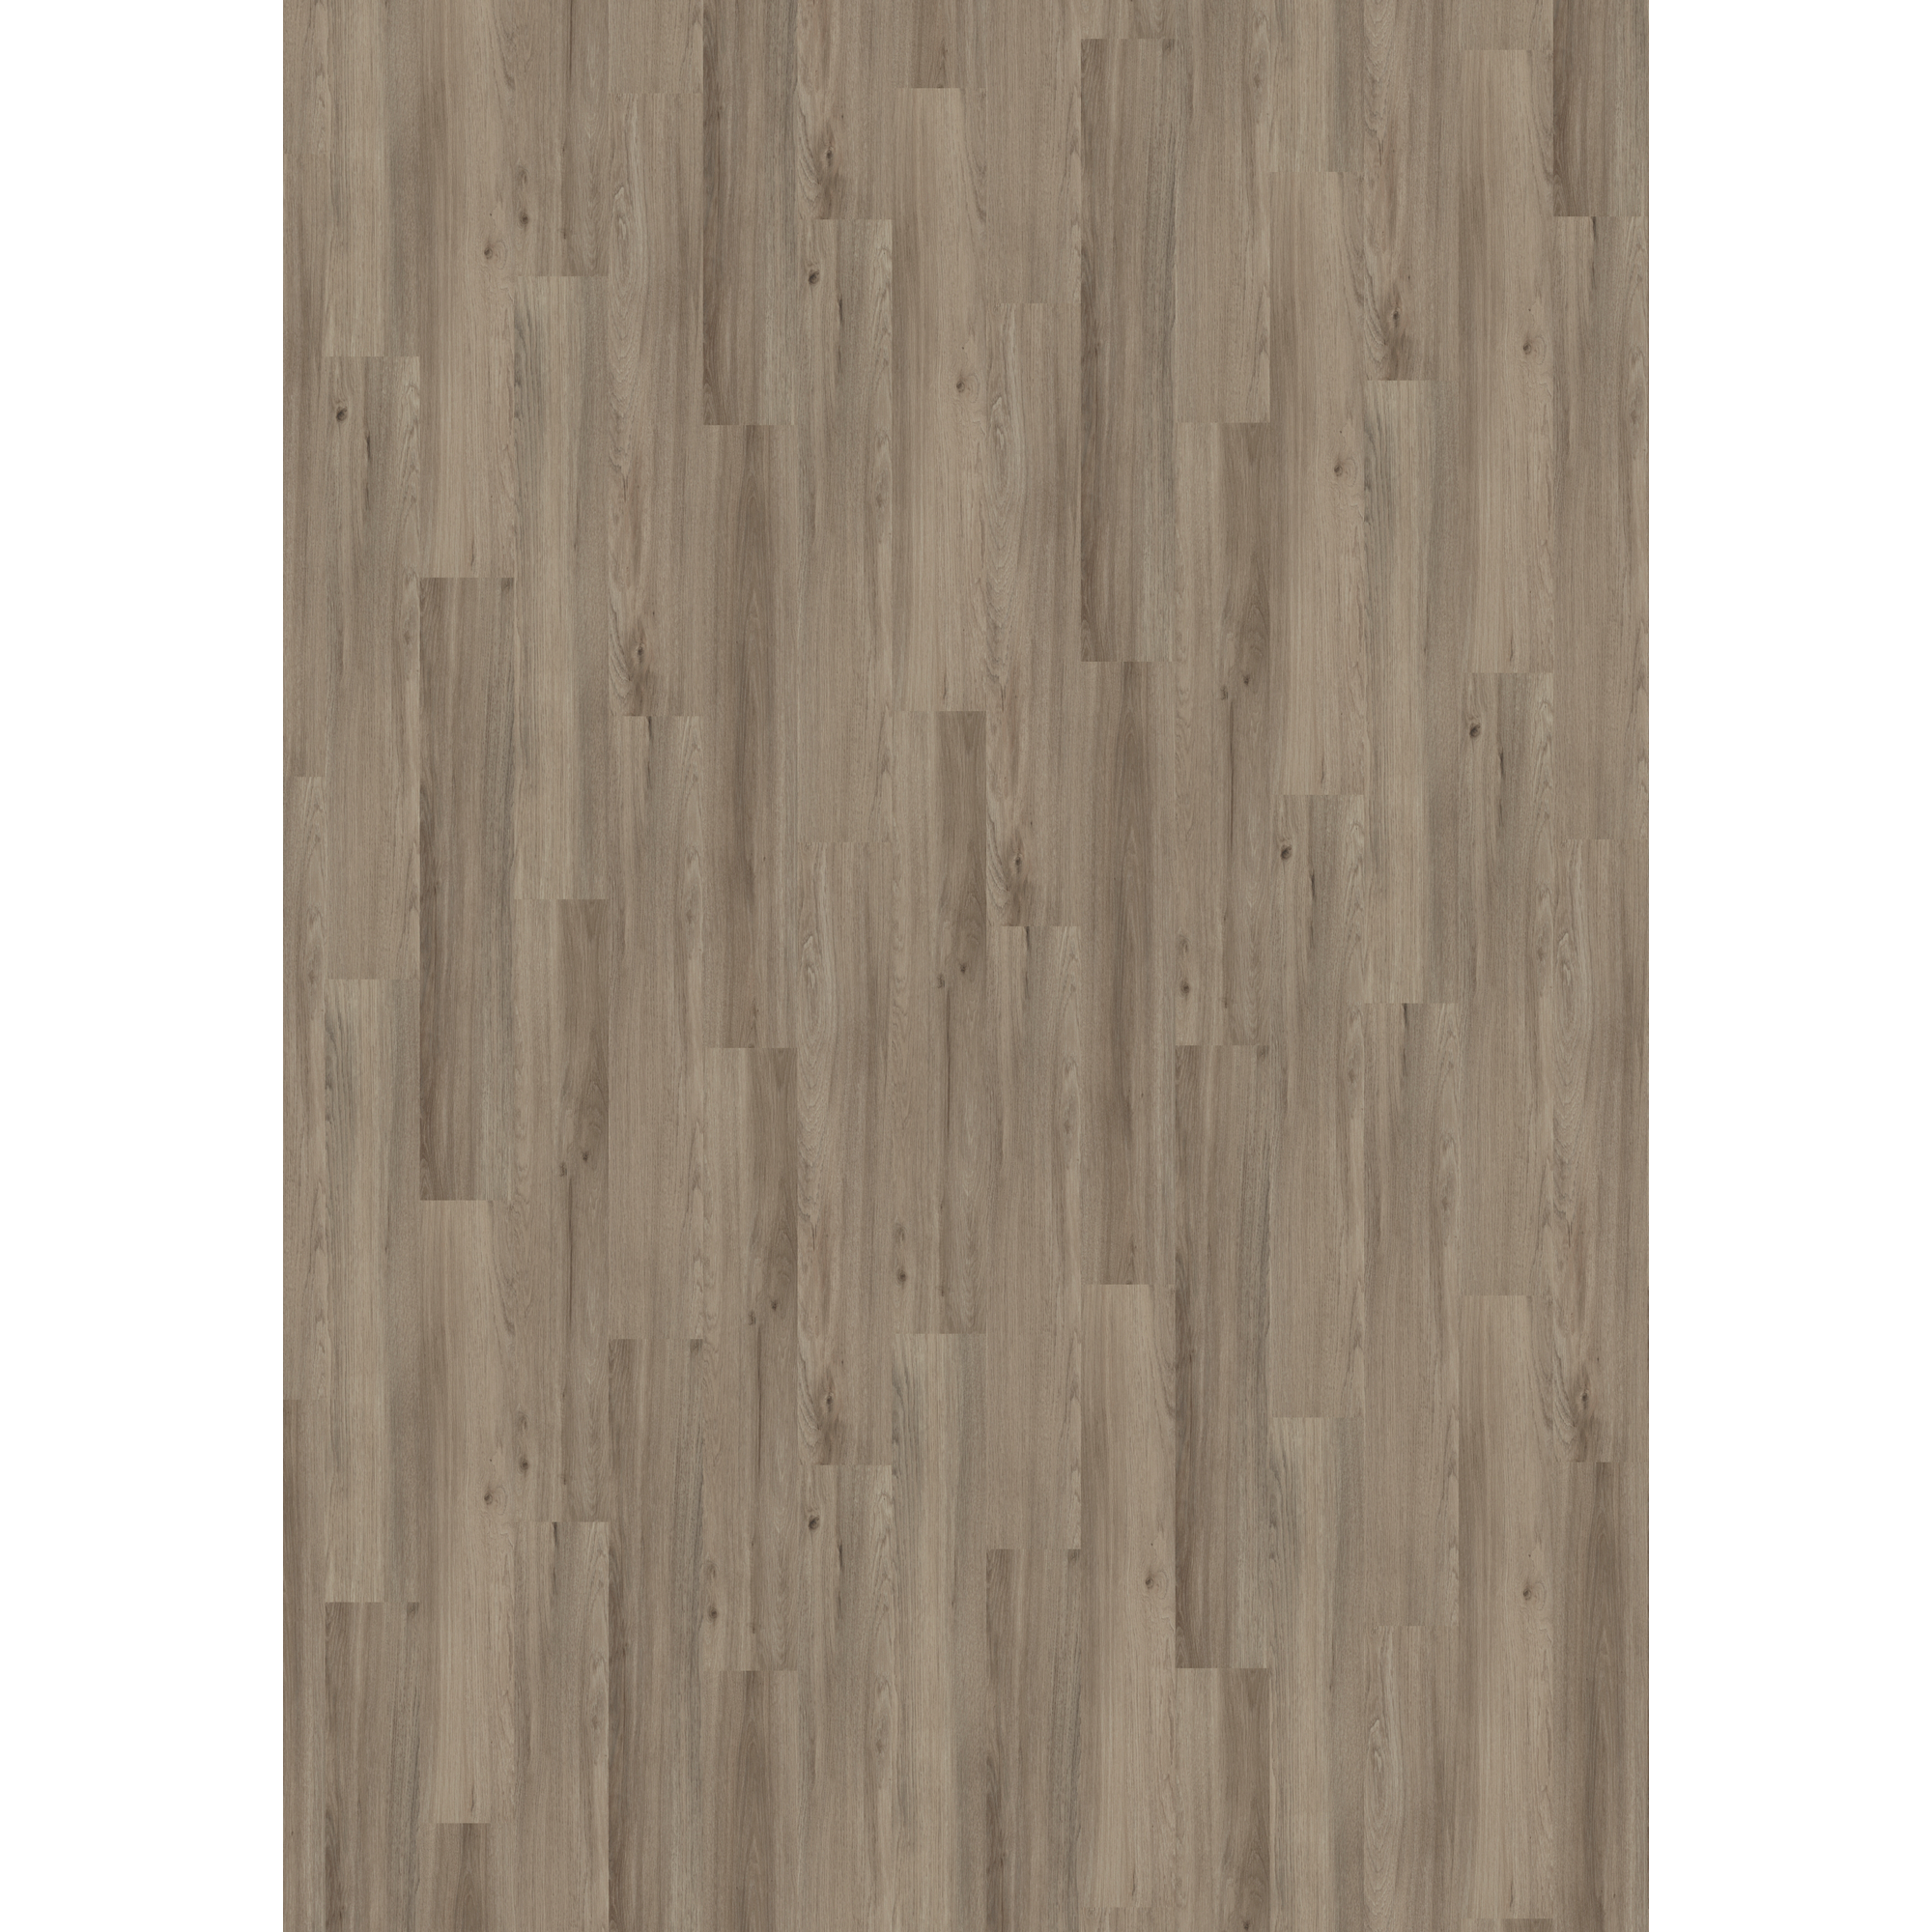 Vinylboden 'Nature' Ash Oak dunkelgrau 10,5 mm + product picture